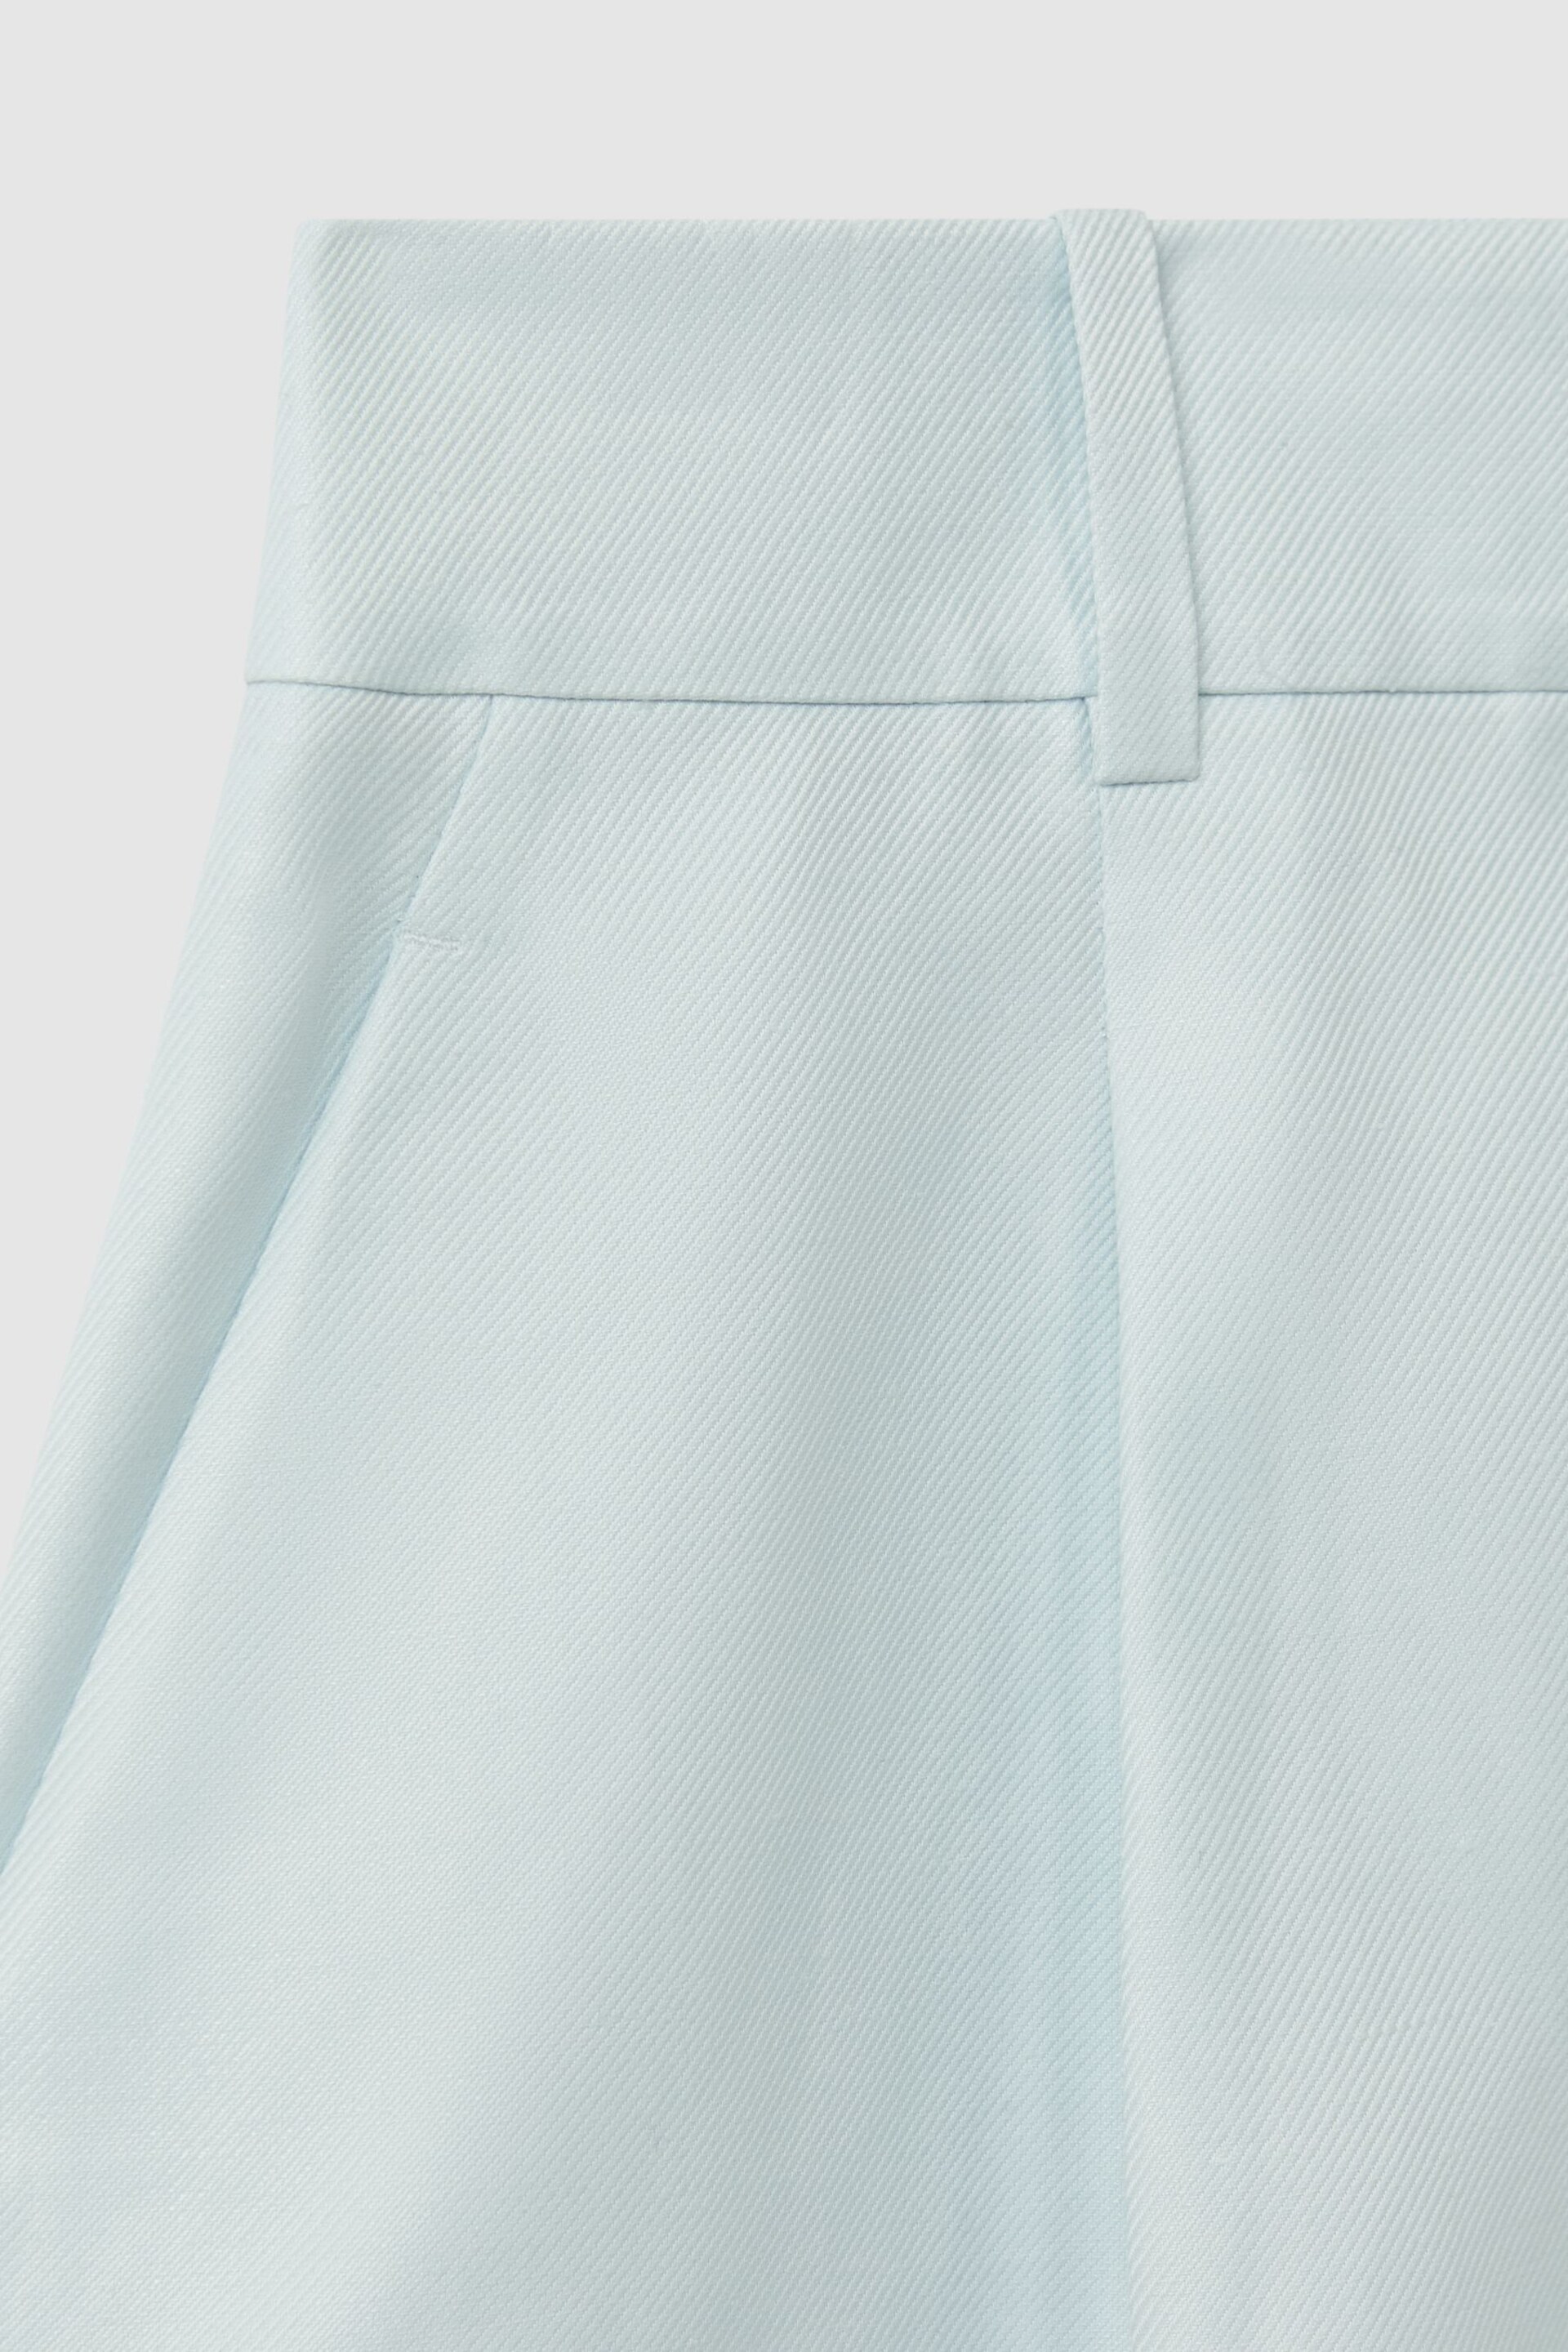 Reiss Blue Lori Viscose-Linen Front Pleat Suit Shorts - Image 6 of 6